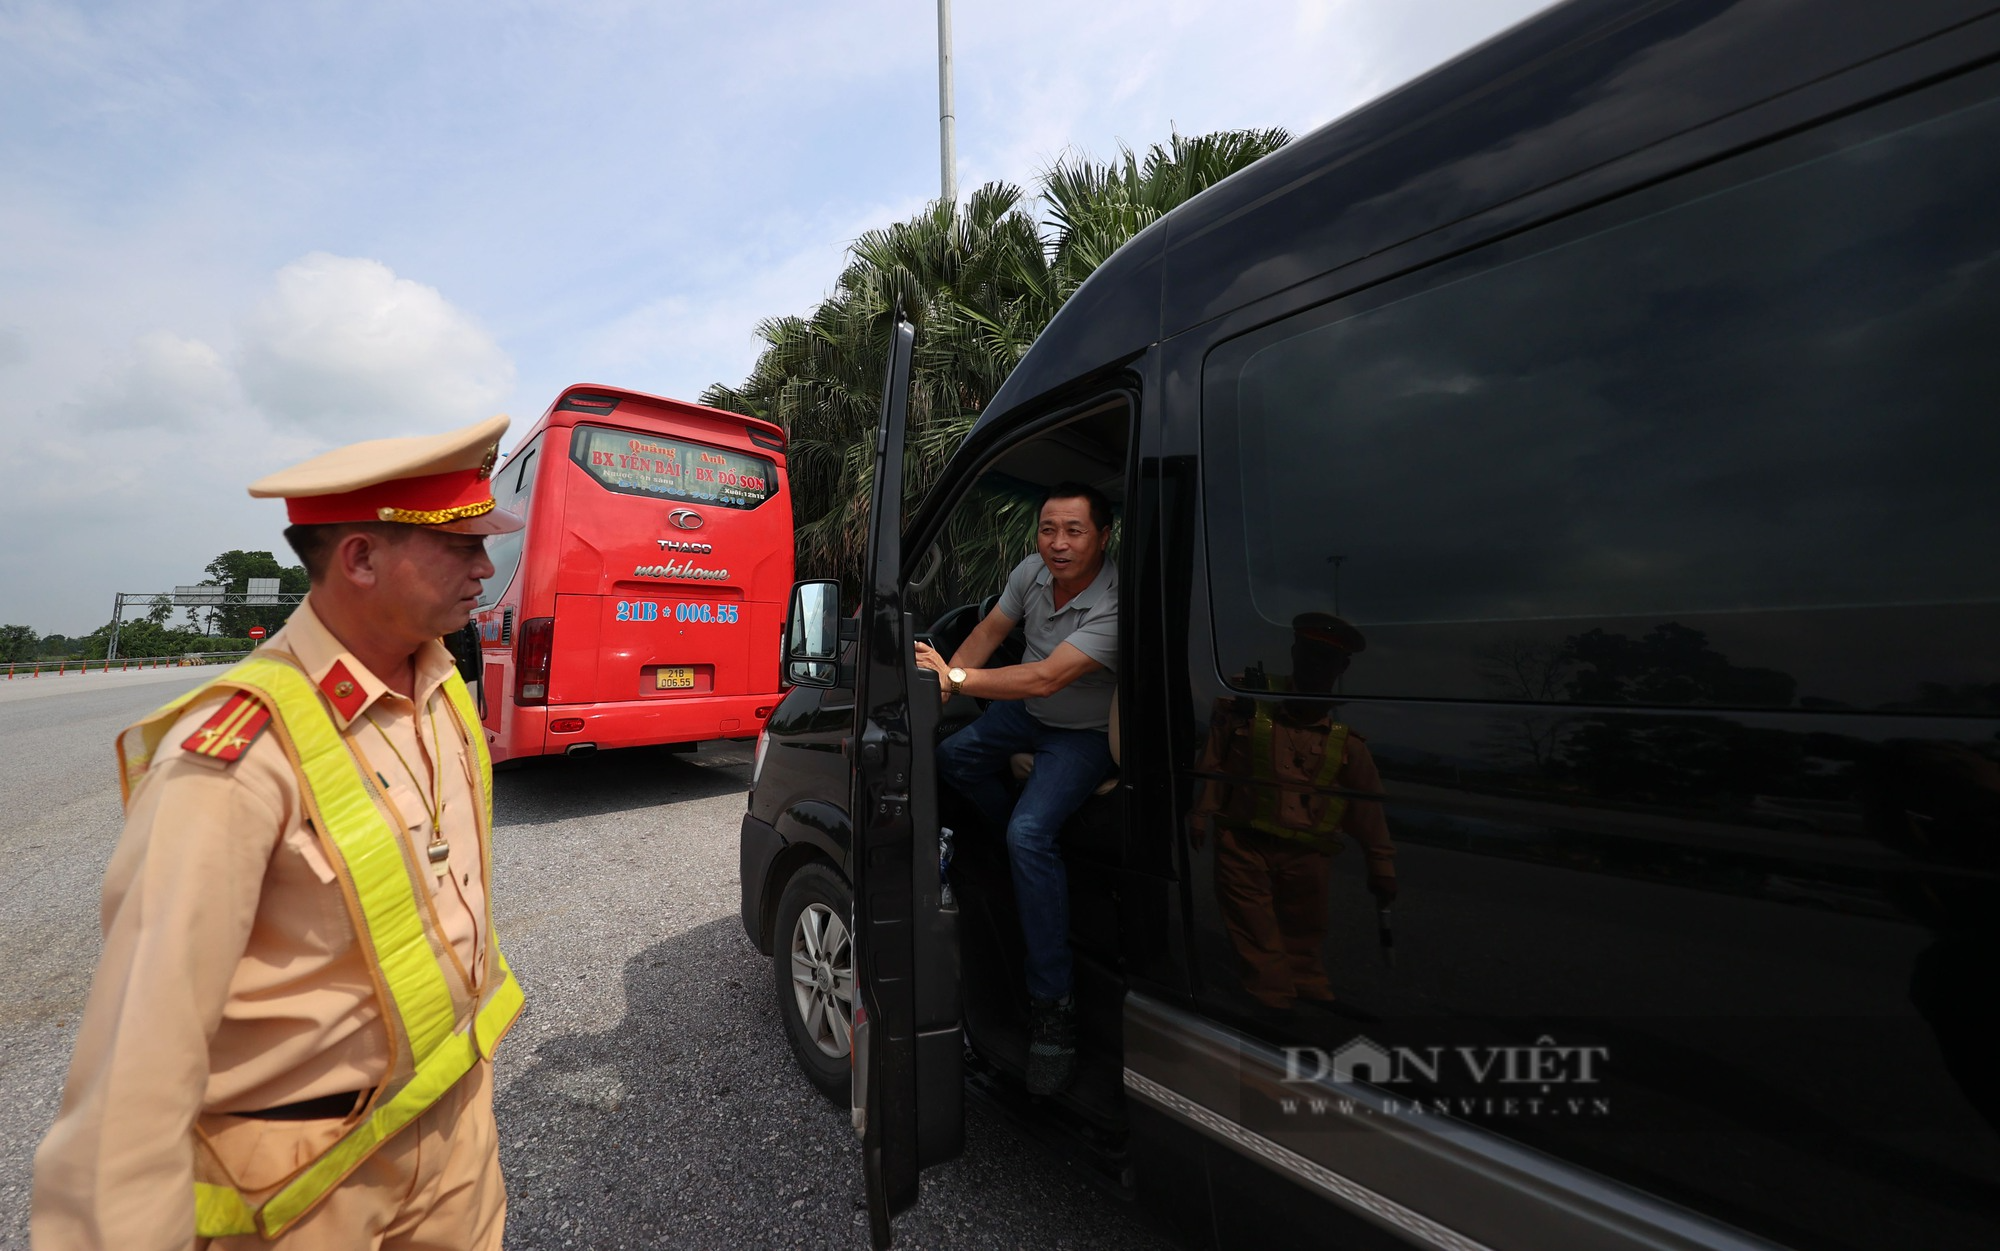 Hàng loạt xe khách vi phạm trên cao tốc Hà Nội - Lào Cai bị xử lý nghiêm - Ảnh 3.